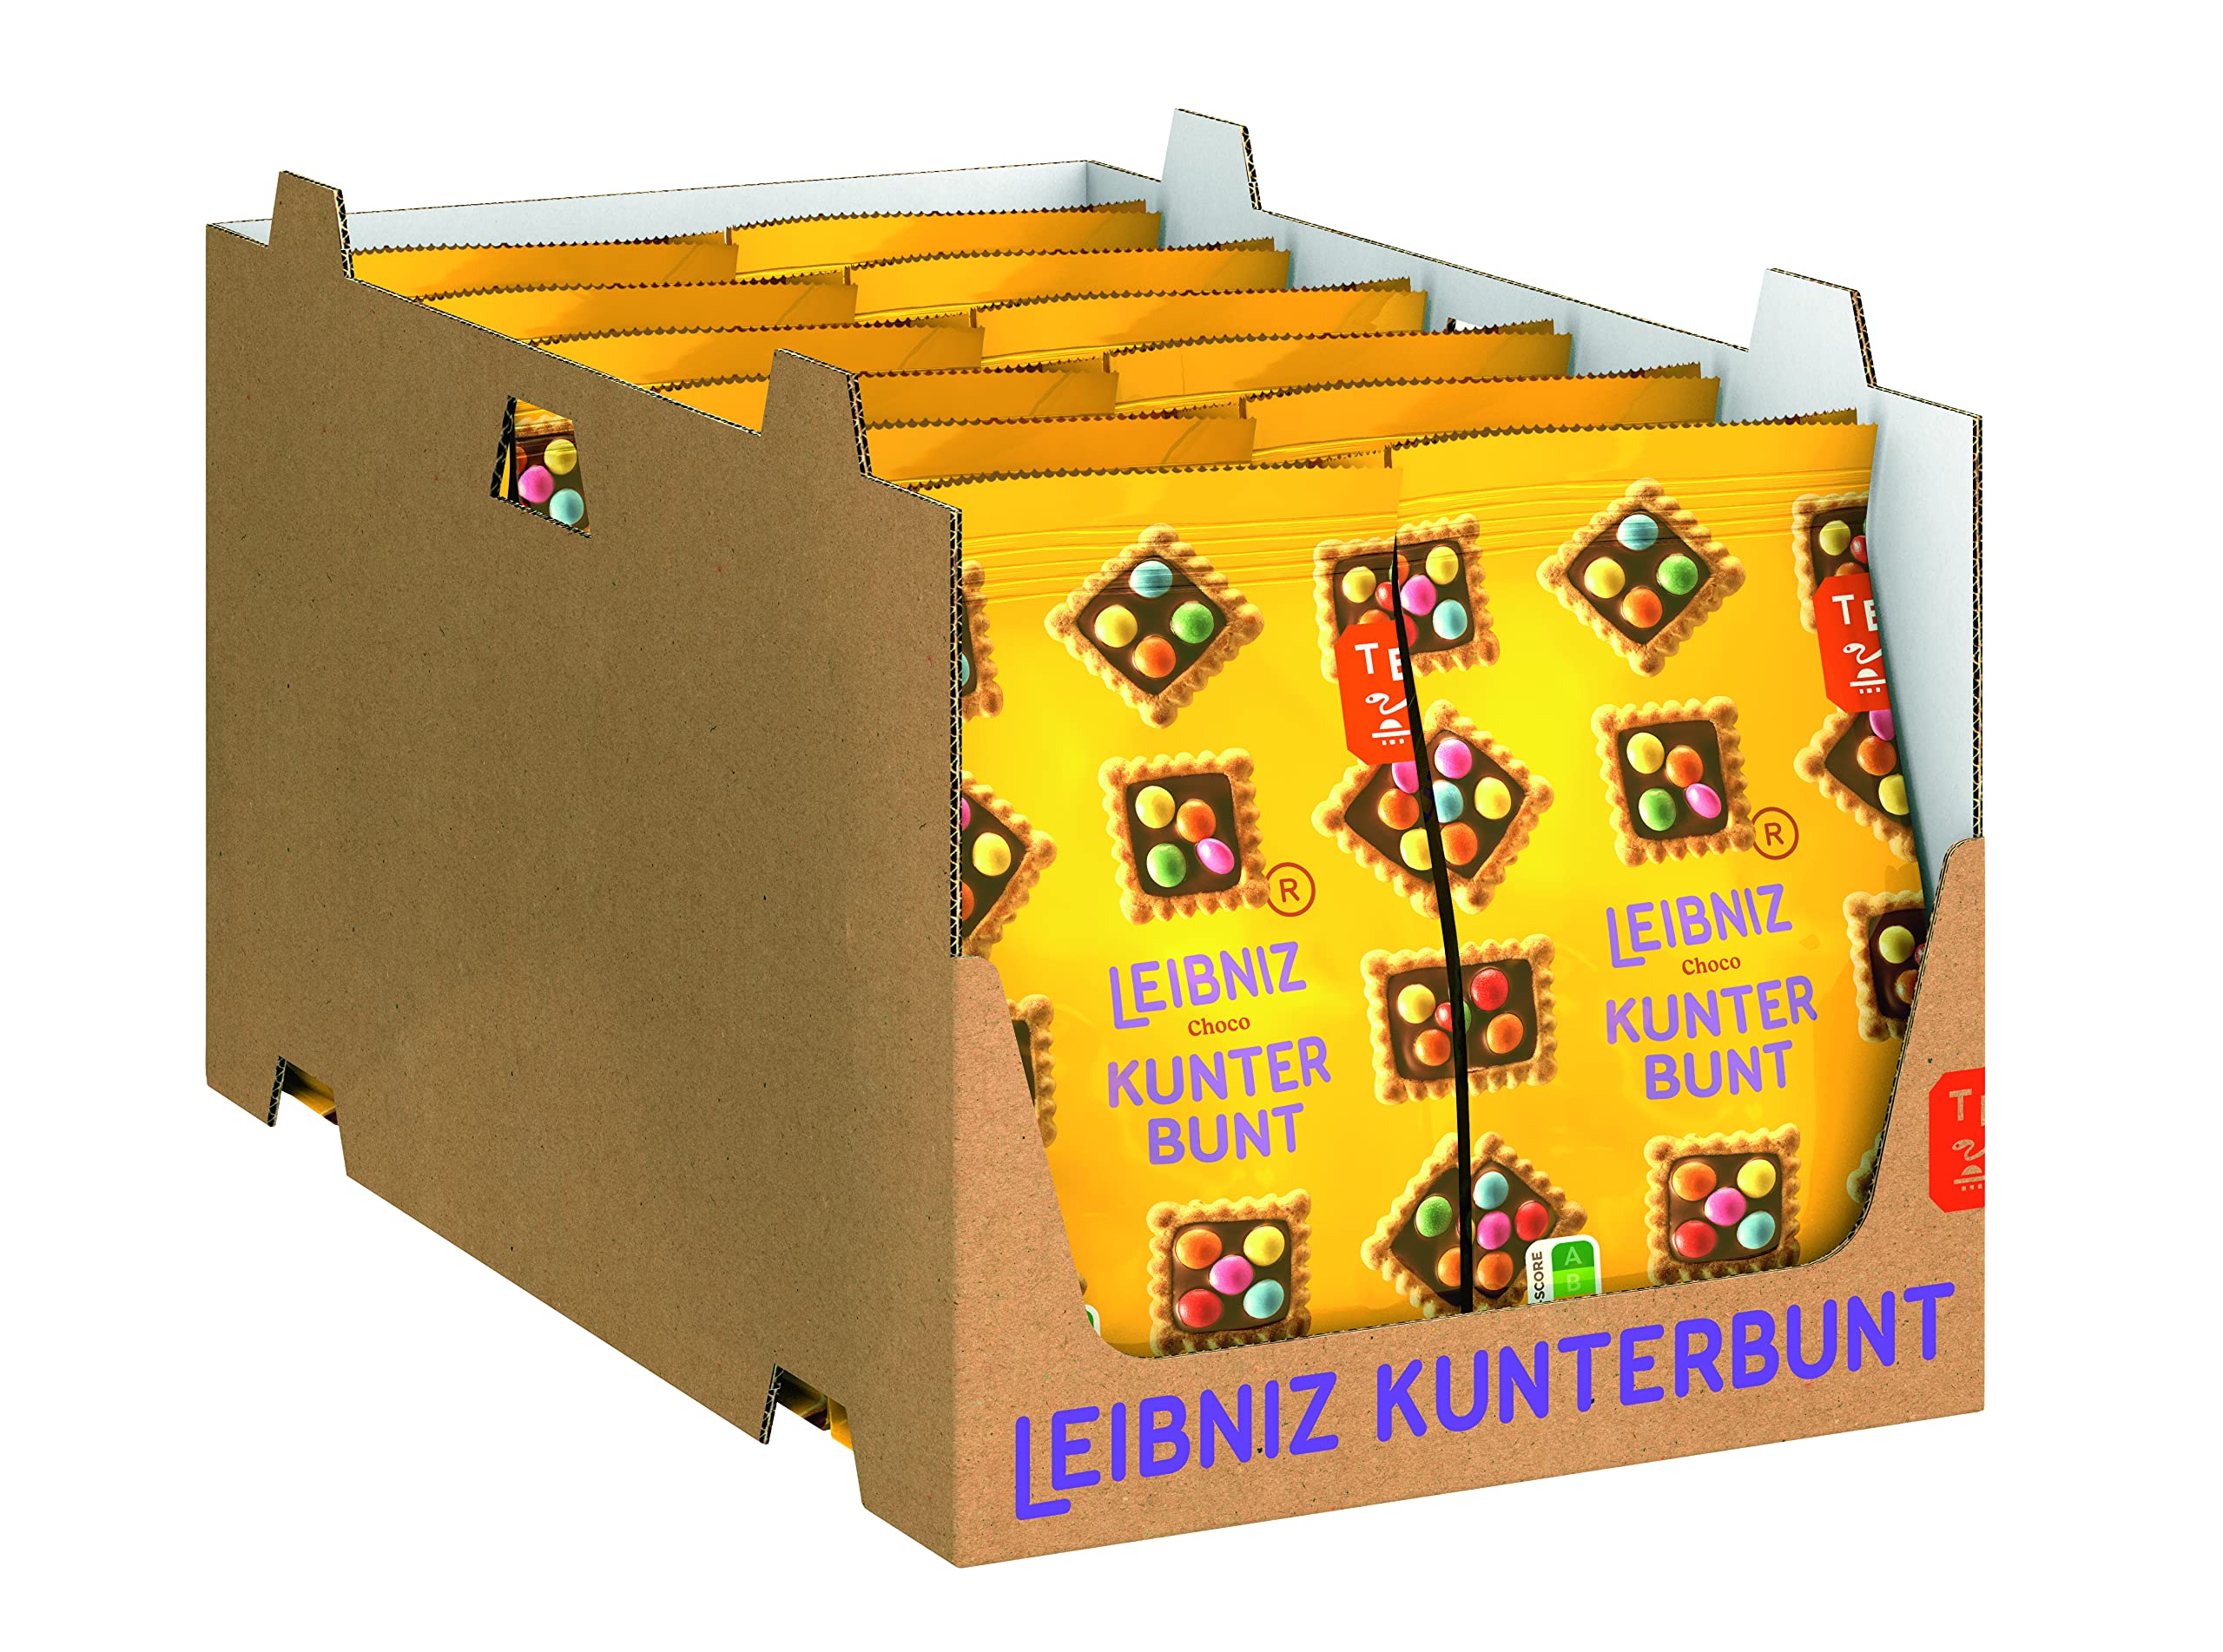 LEIBNIZ Kunterbunt Choco, 12er Pack, knusprige Kekse mit Schokoladencreme und Schokolinsen, Großpackung als Vorrat oder zum Verkauf (12 x 150 g)